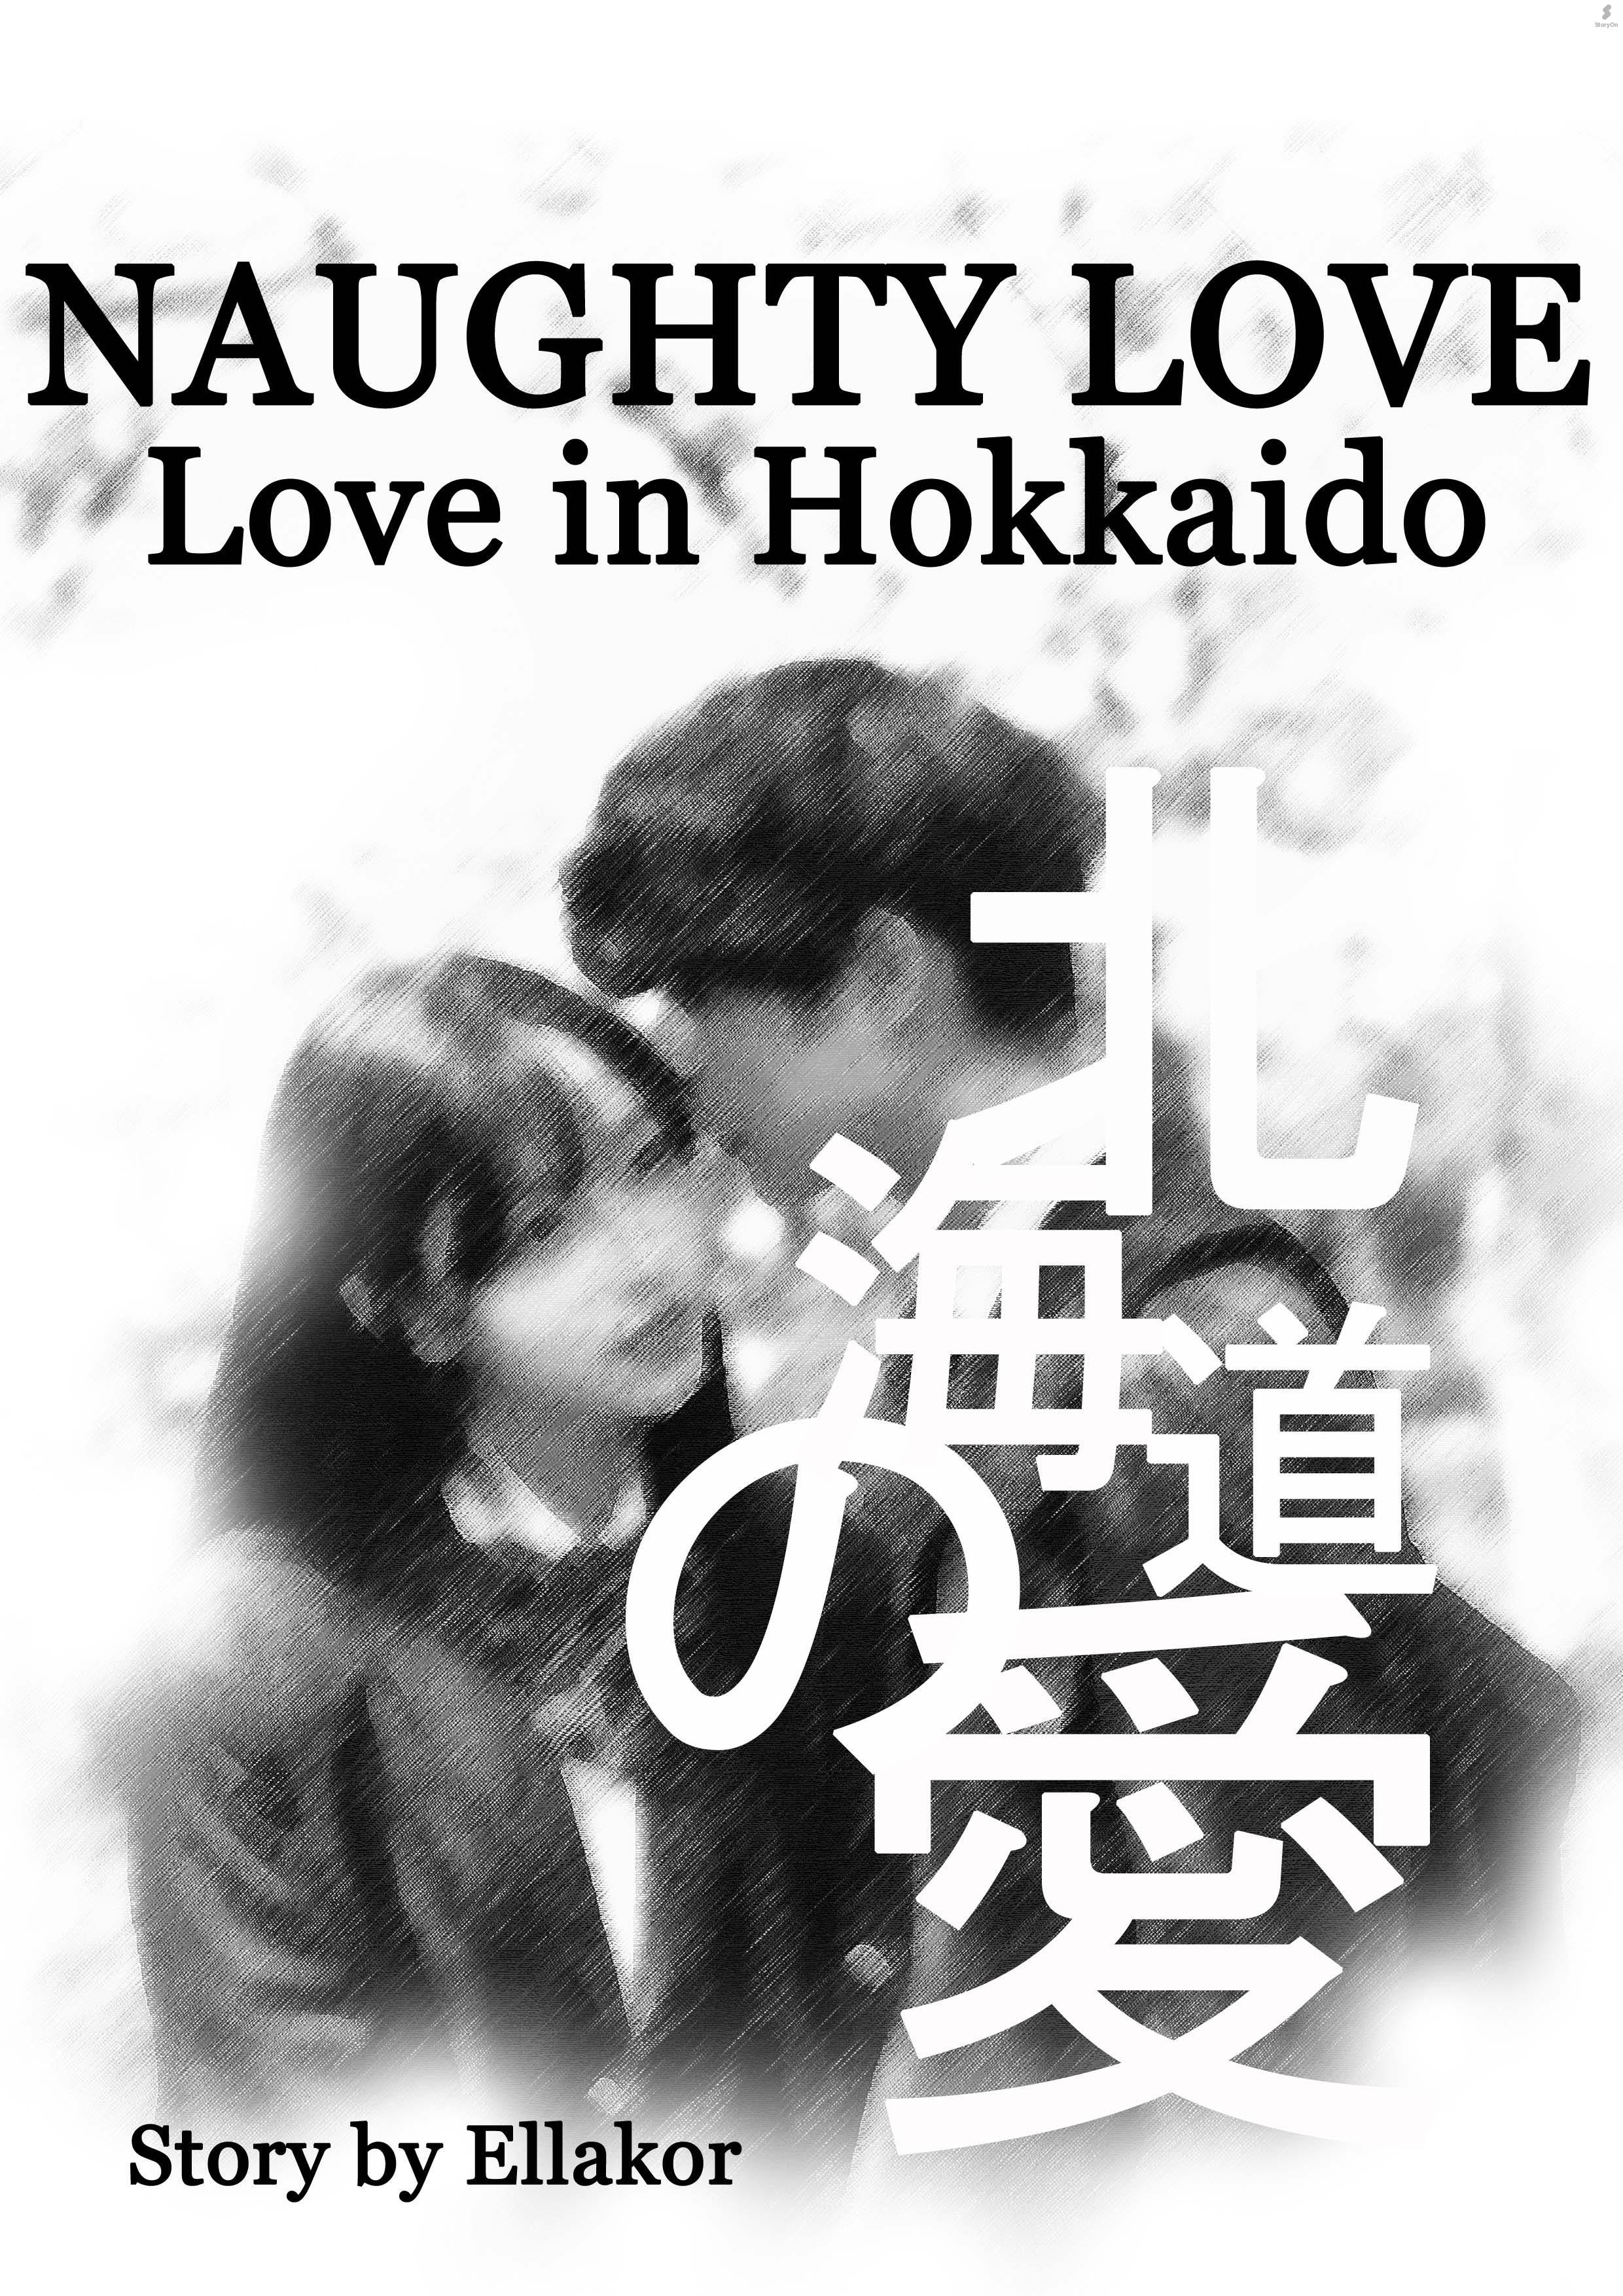 Naughty Love (Love In Hokkaido)